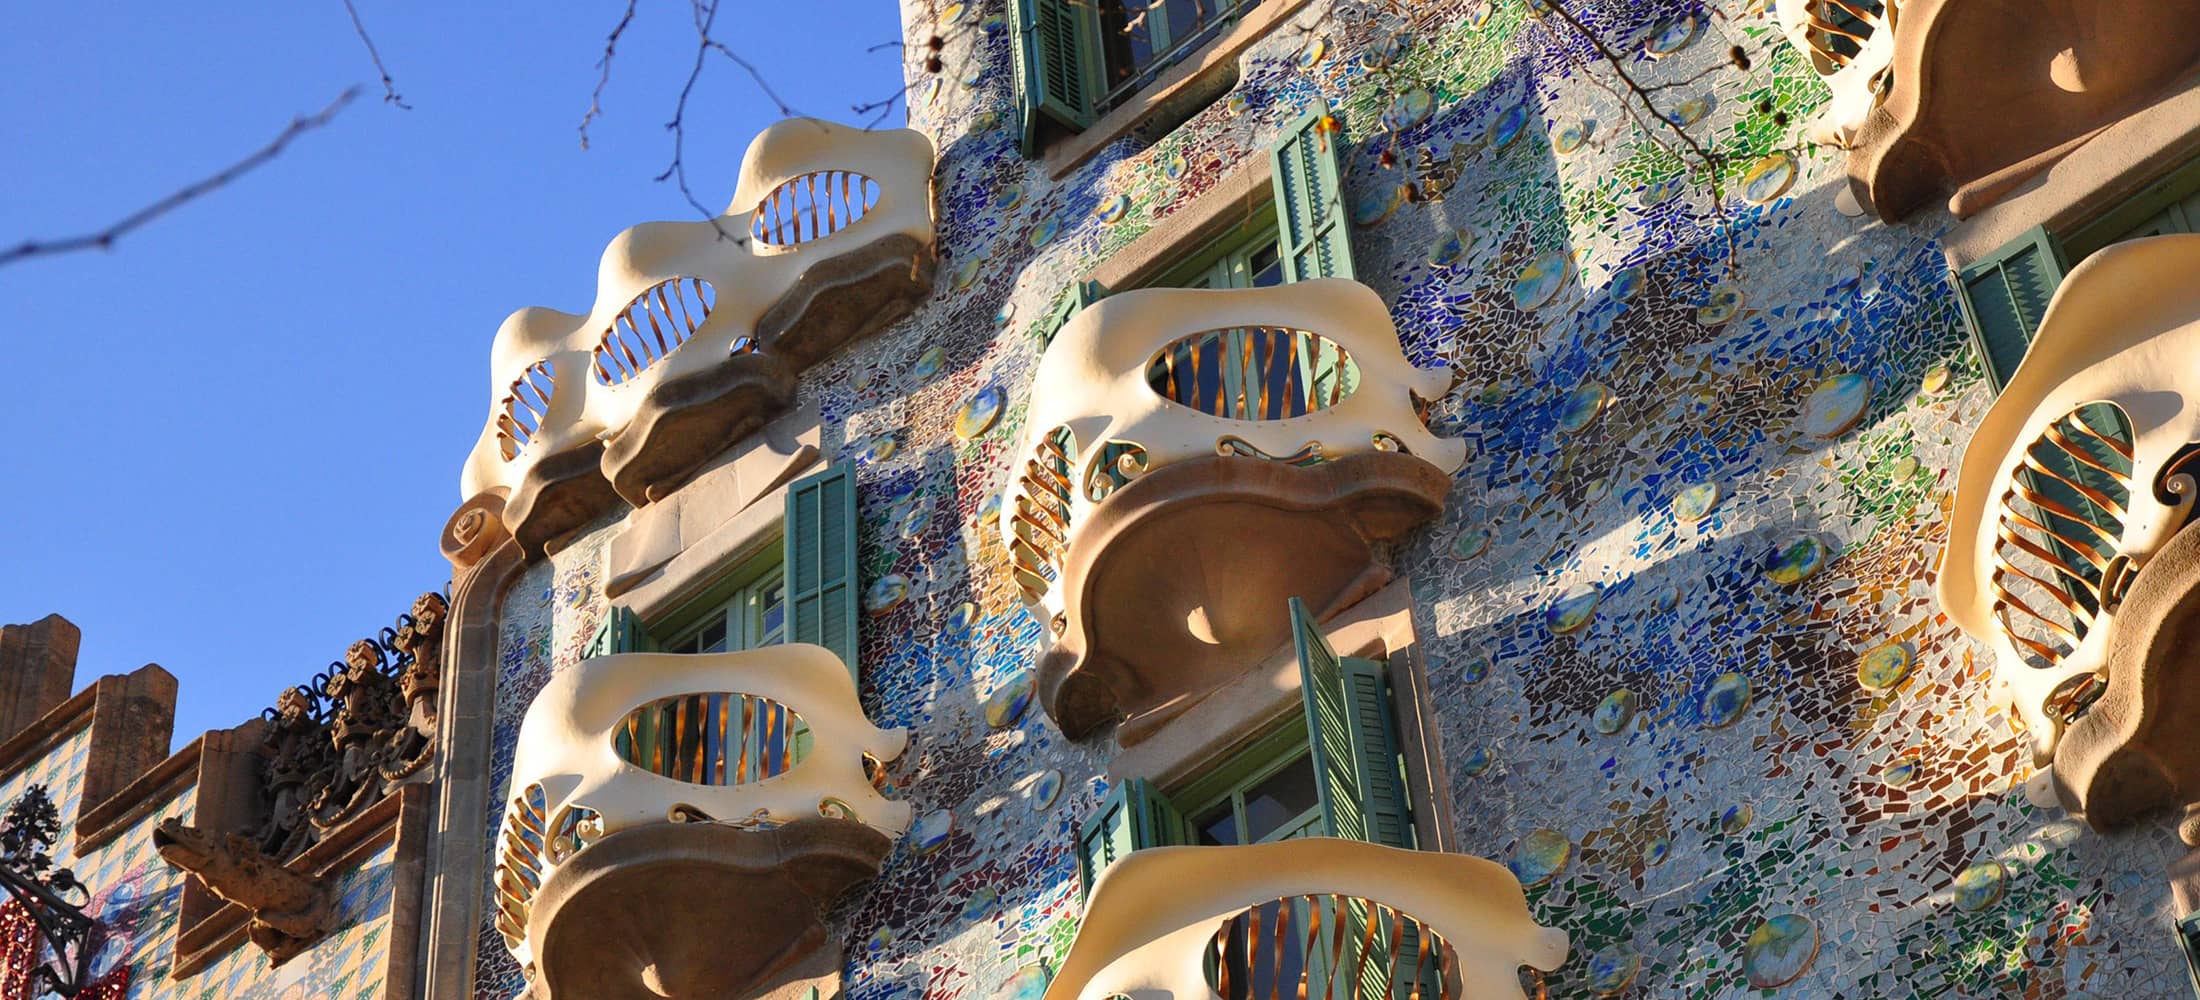 Image of Casa Batlló